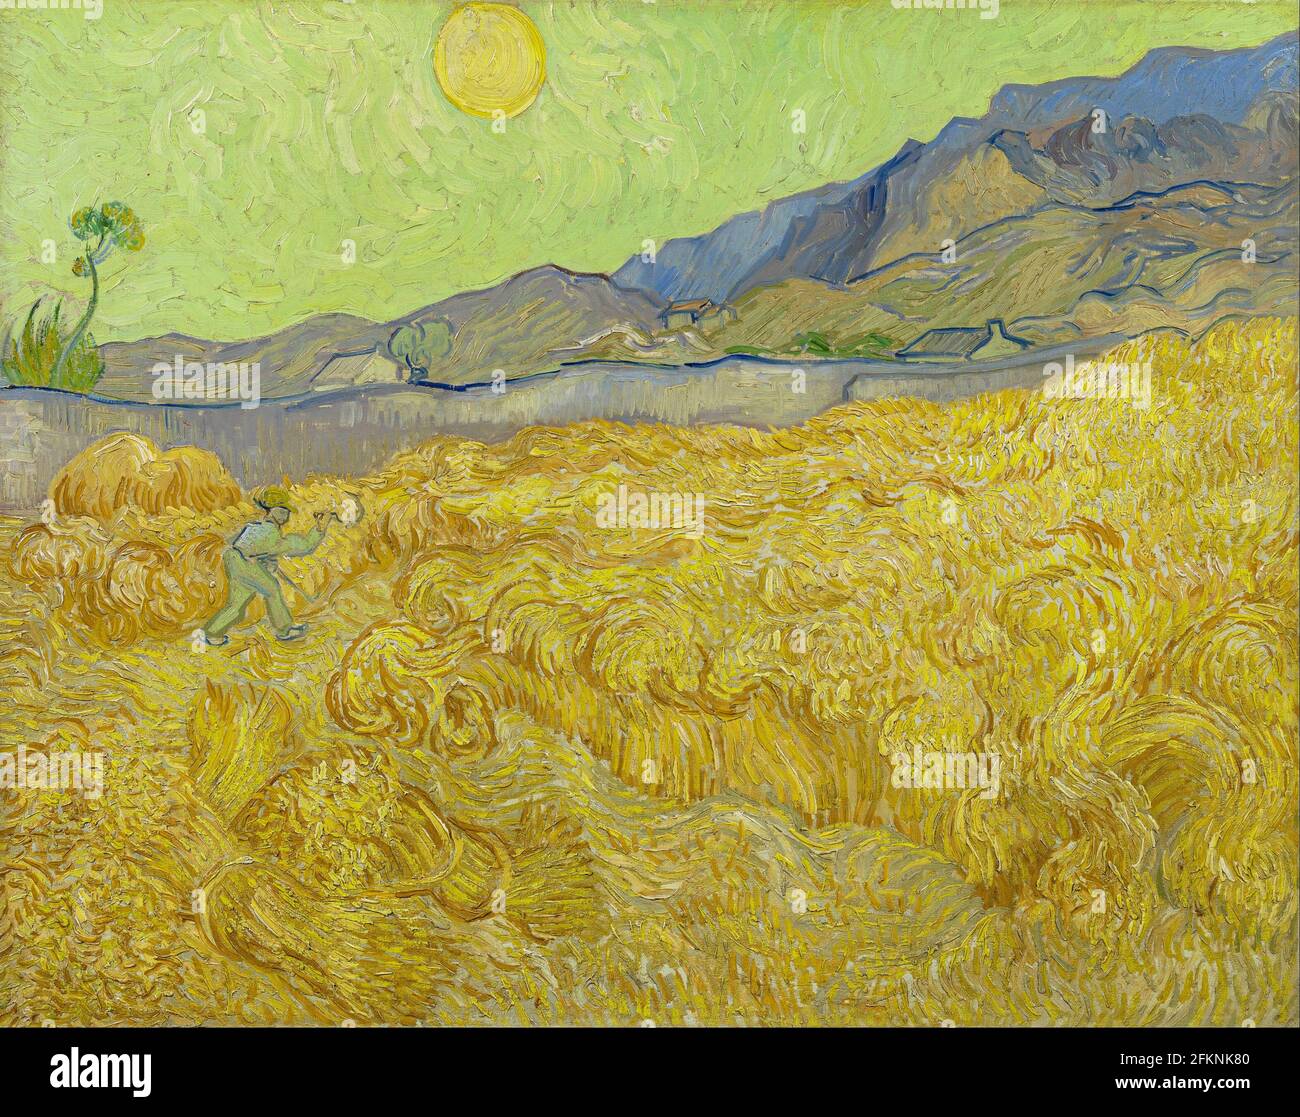 Vincent van Gogh, Wheatfield avec une couche, 1889, huile sur toile, Musée Van Gogh, Amsterdam, Pays-Bas Banque D'Images